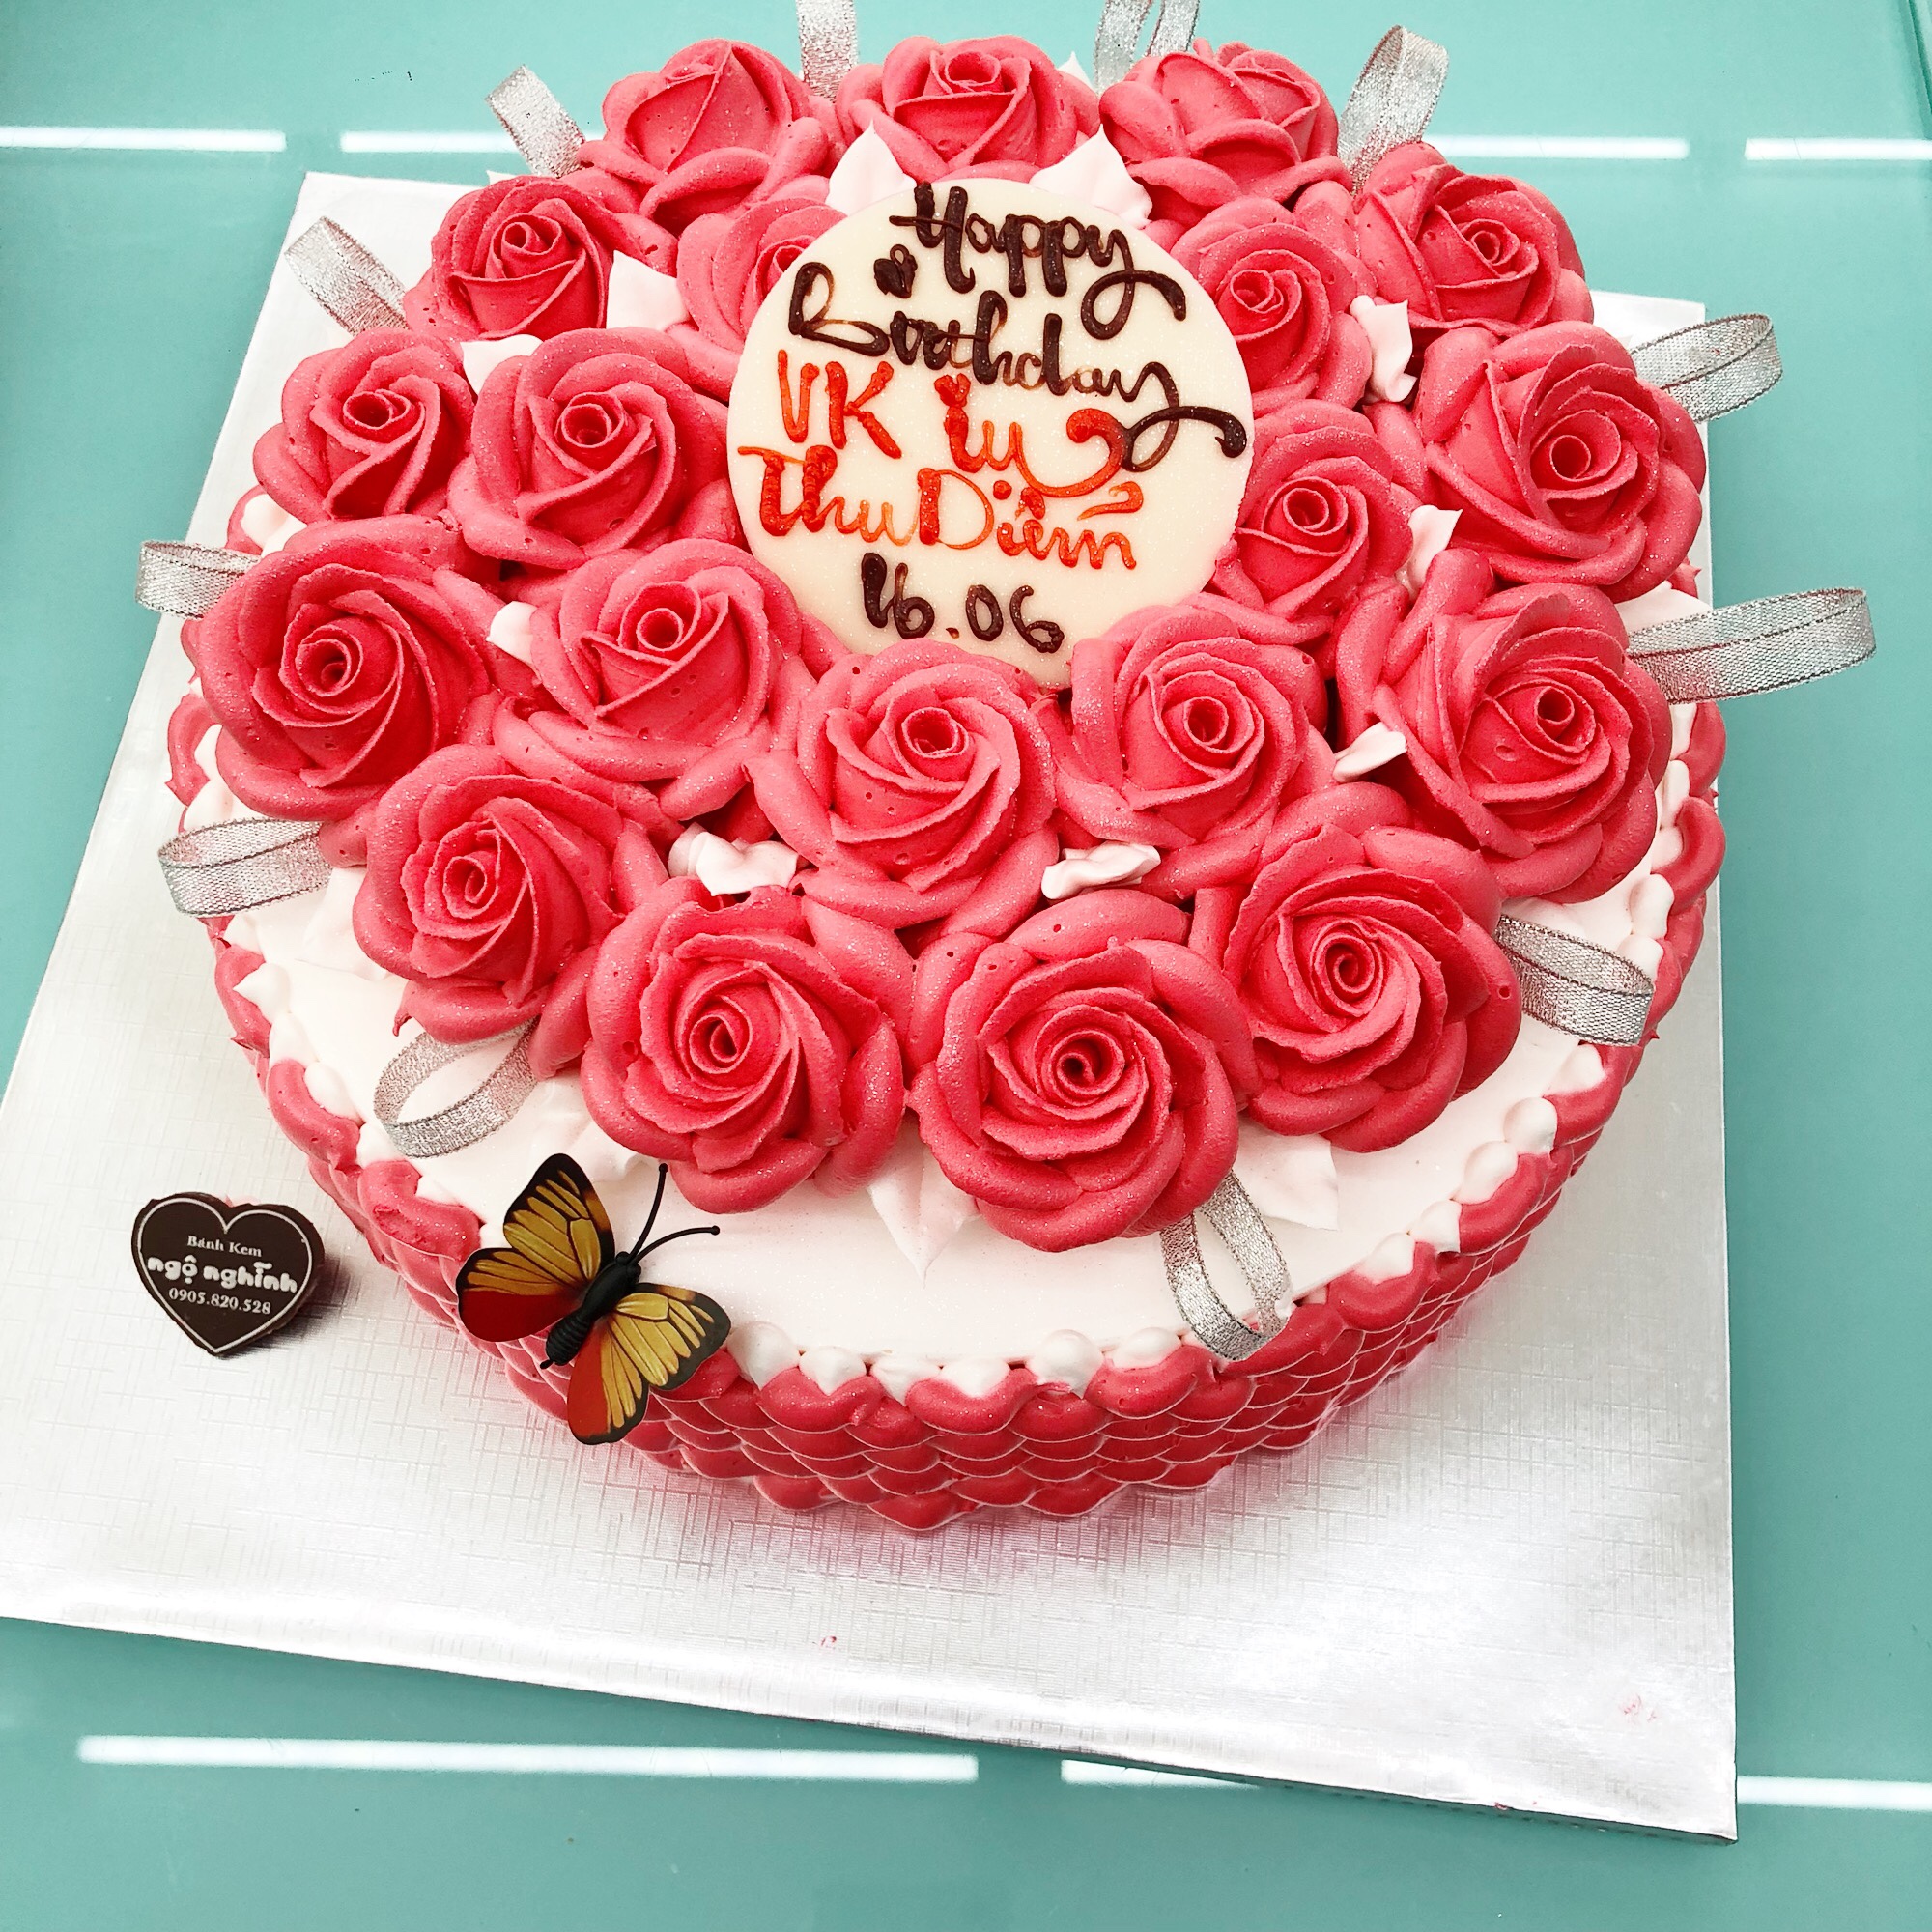 Bánh kem trái tim in hình vợ chồng mừng sinh nhật vợ yêu - Bánh Thiên Thần  : Chuyên nhận đặt bánh sinh nhật theo mẫu